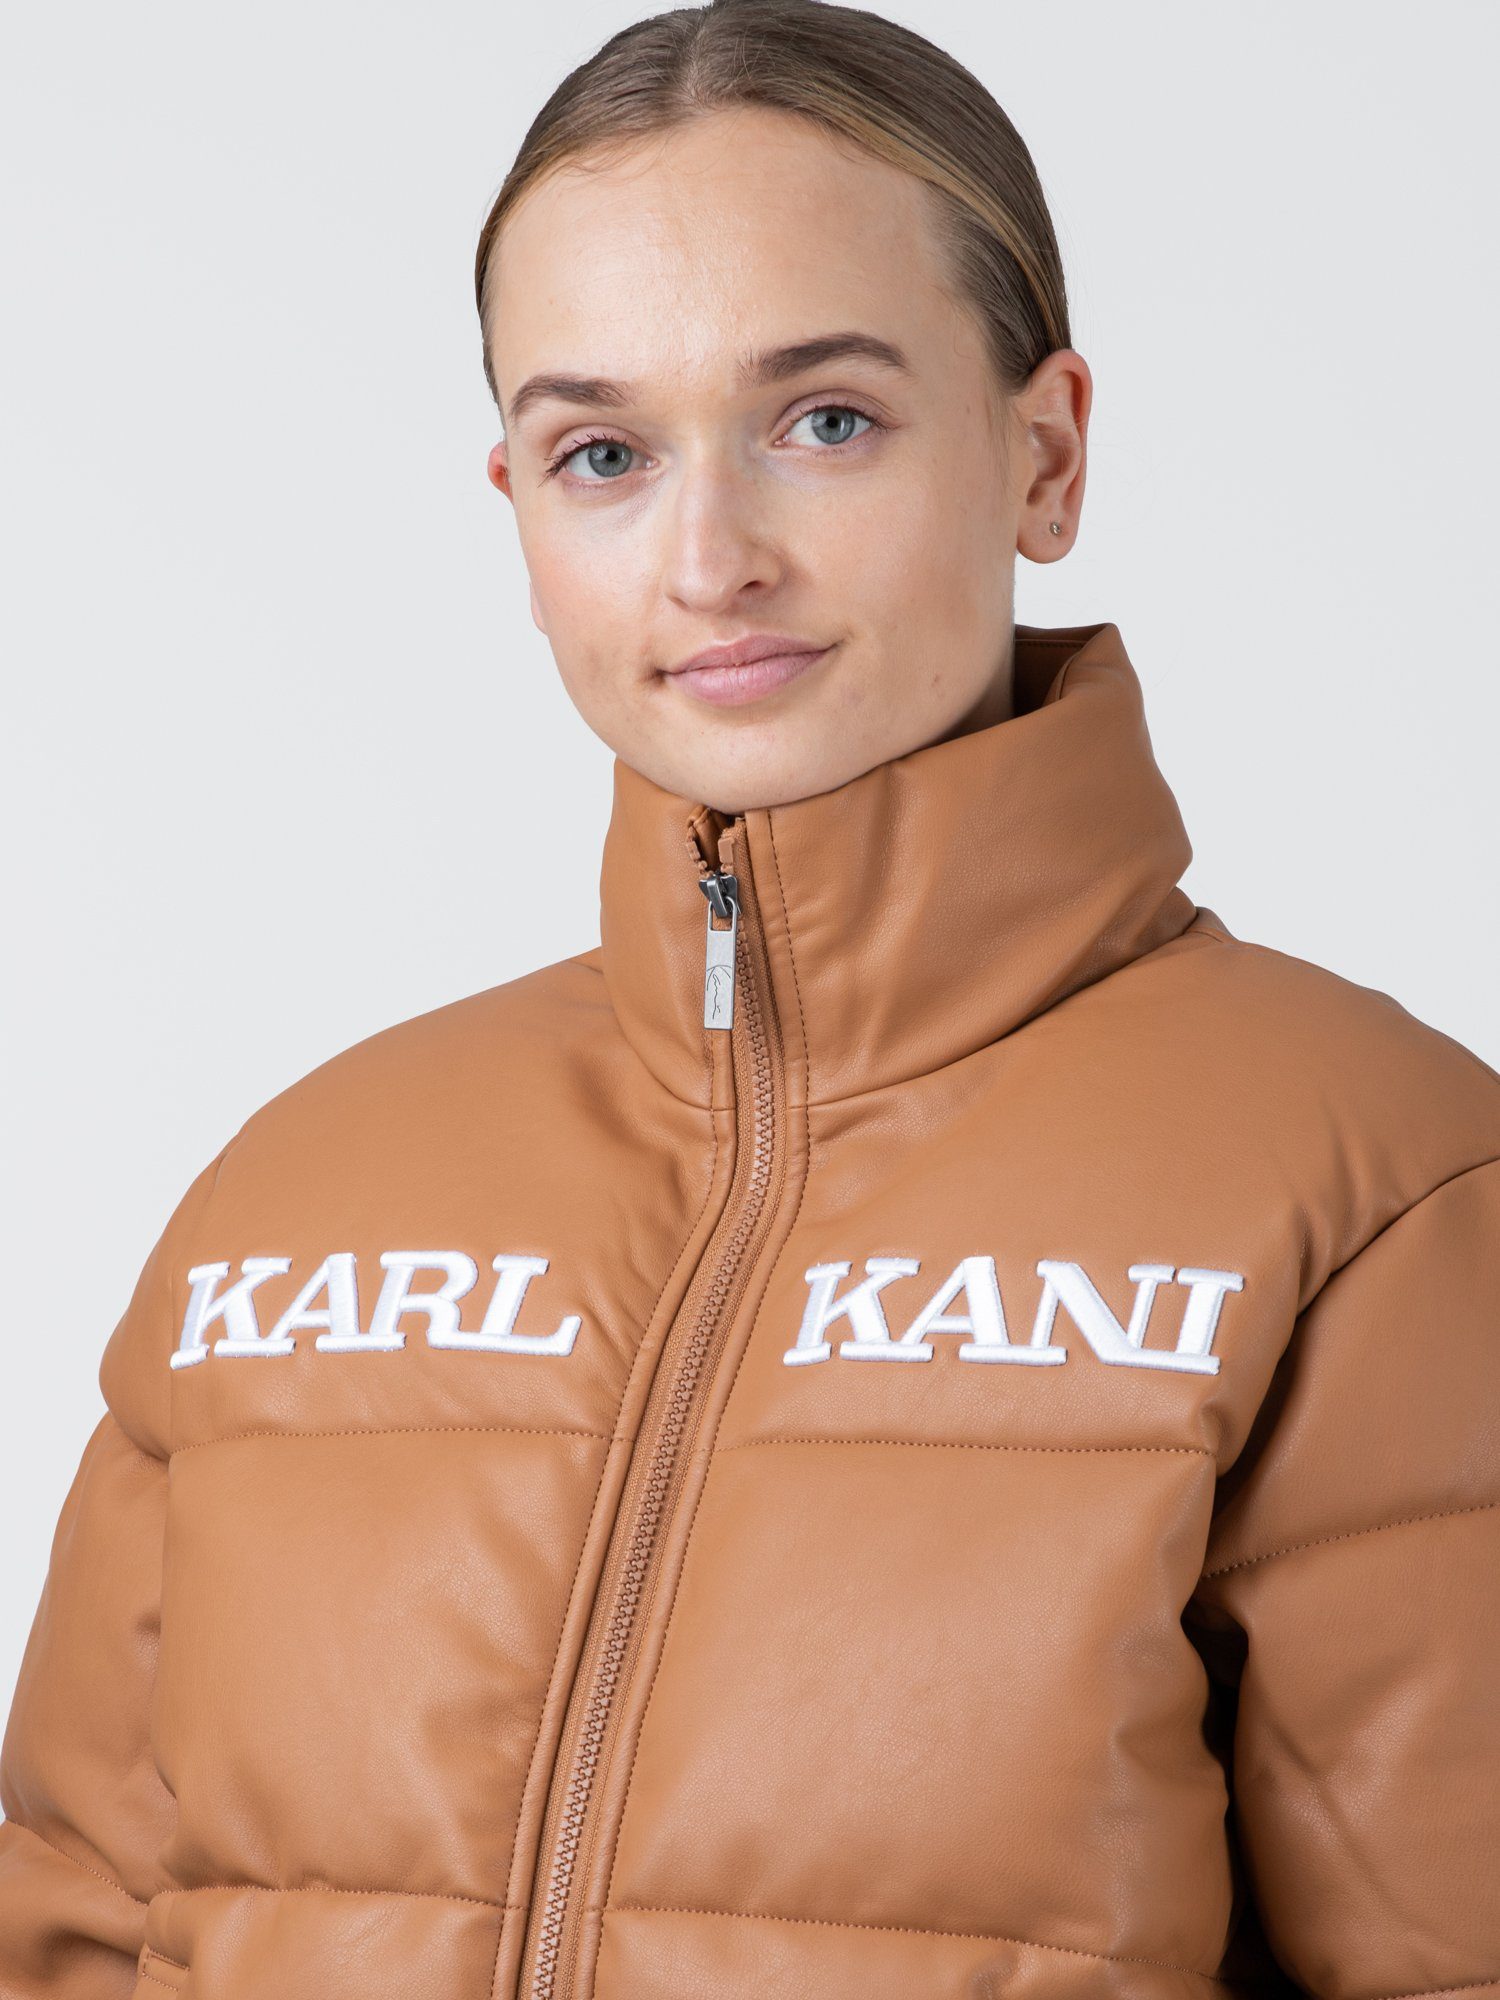 Karl Kani Winterjacke Karl Puffer Jacket Retro Kani